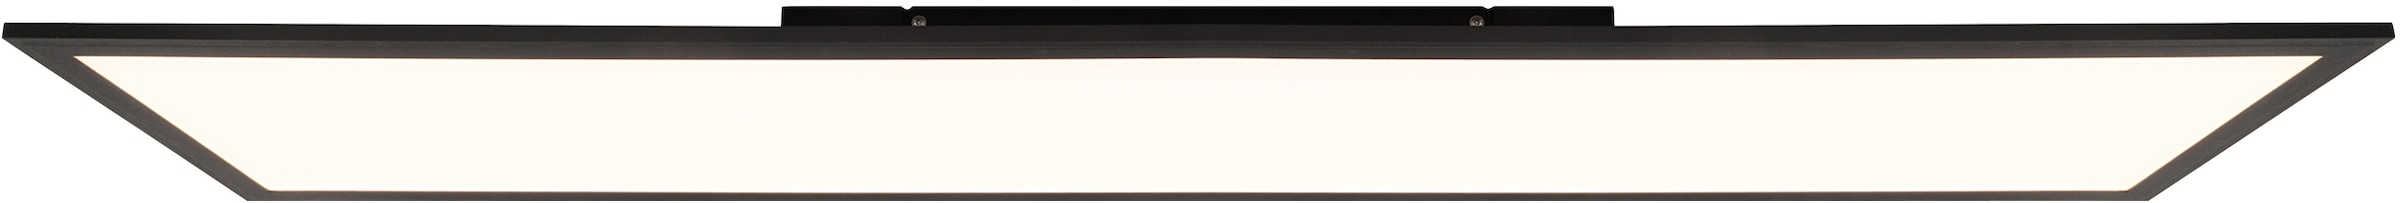 Brilliant Leuchten LED Panel »Abie«, mit RGB Farbwechsel, dimmbar, 120x30  cm, 3800 Lumen, Farbtemperatur 2700-6500 Kelvin einstellbar, inkl.  Fernbedienung im OTTO Online Shop